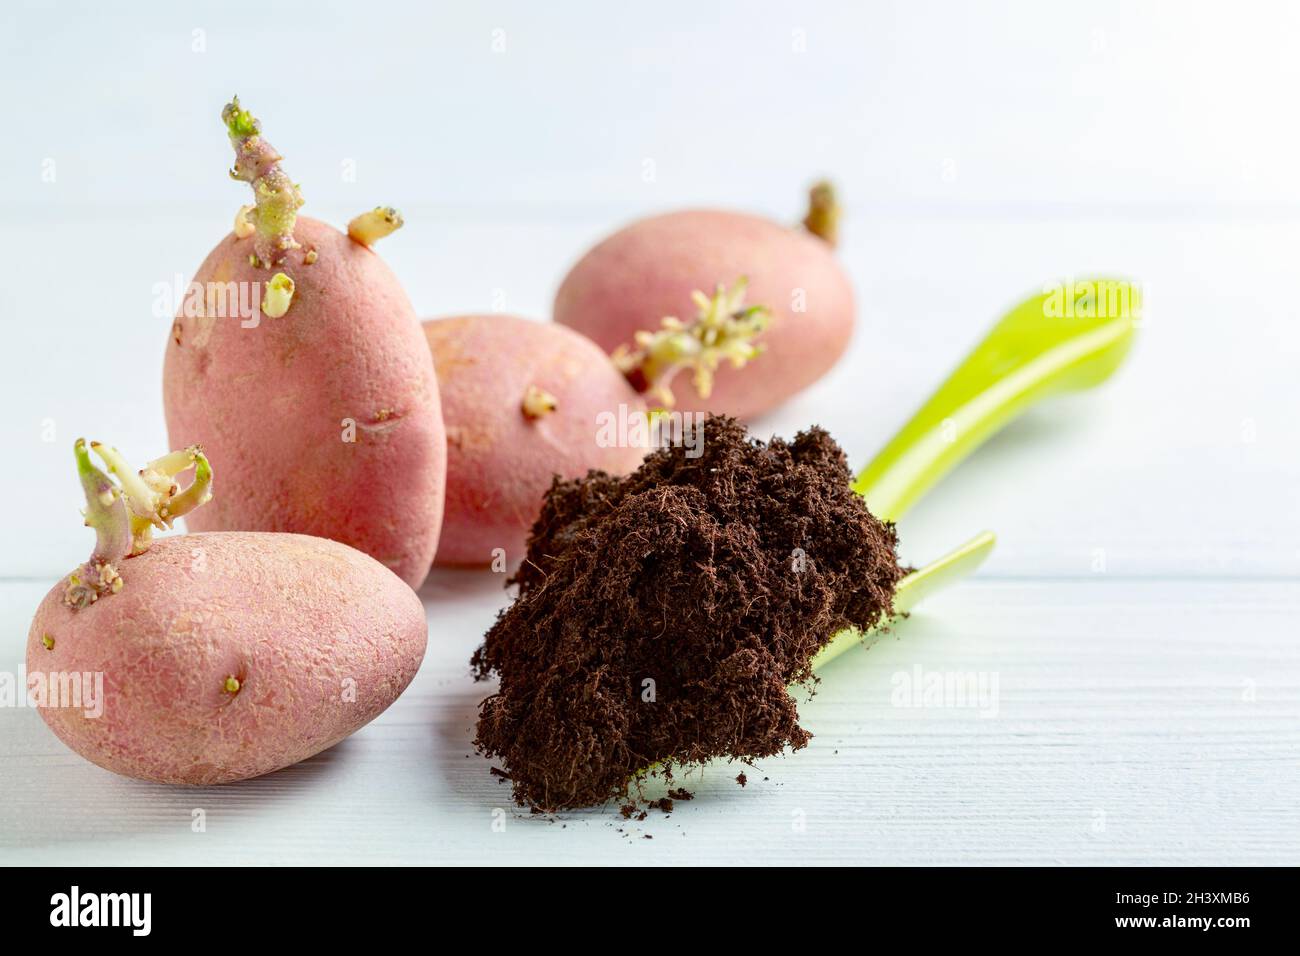 Las patatas germinadas y la tierra para plantar. Foto de stock